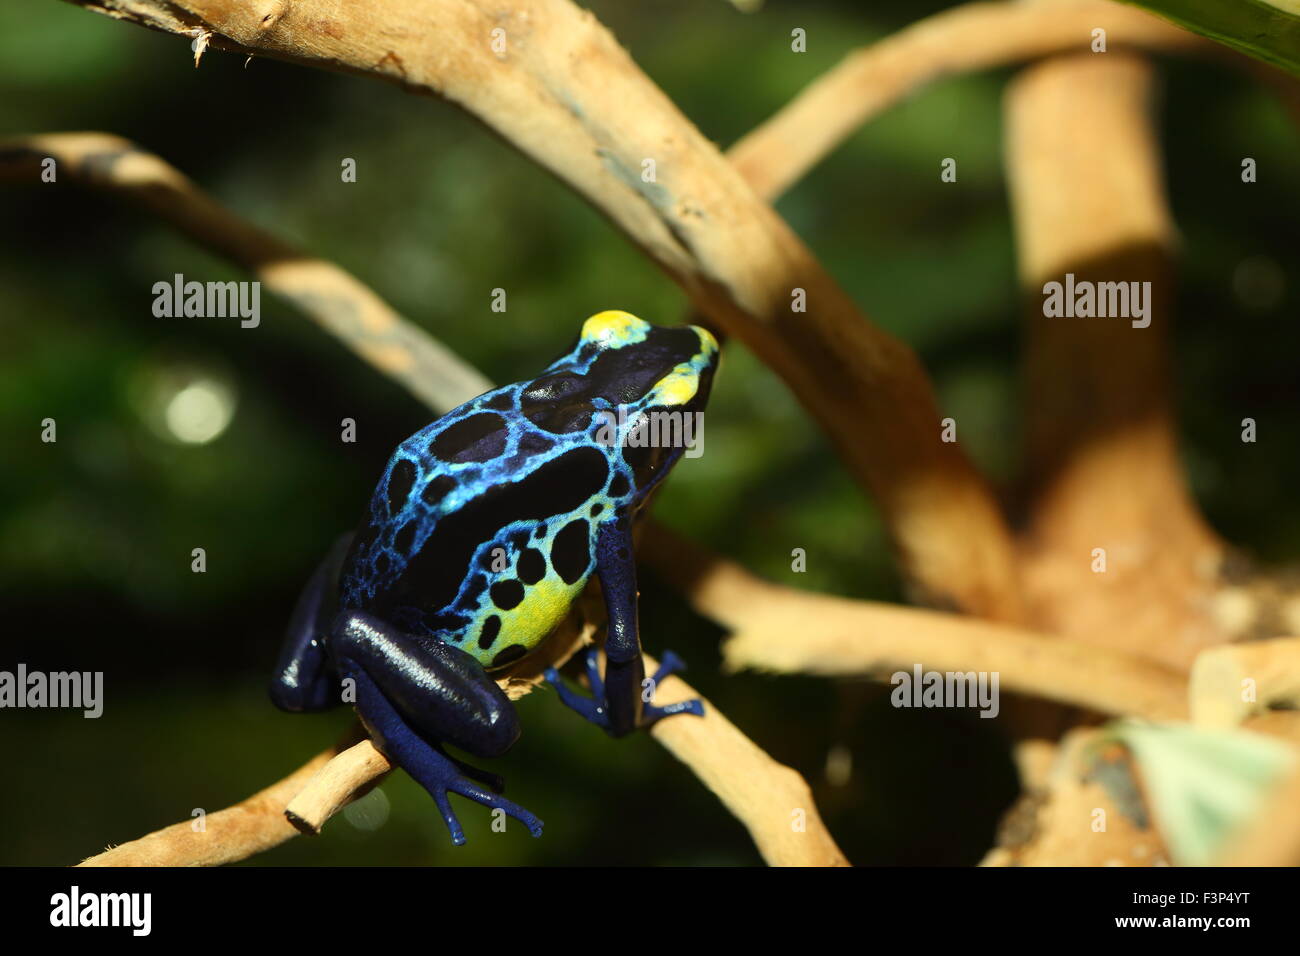 Dyeing poison dart frog (Dendrobates tinctorius) Stock Photo